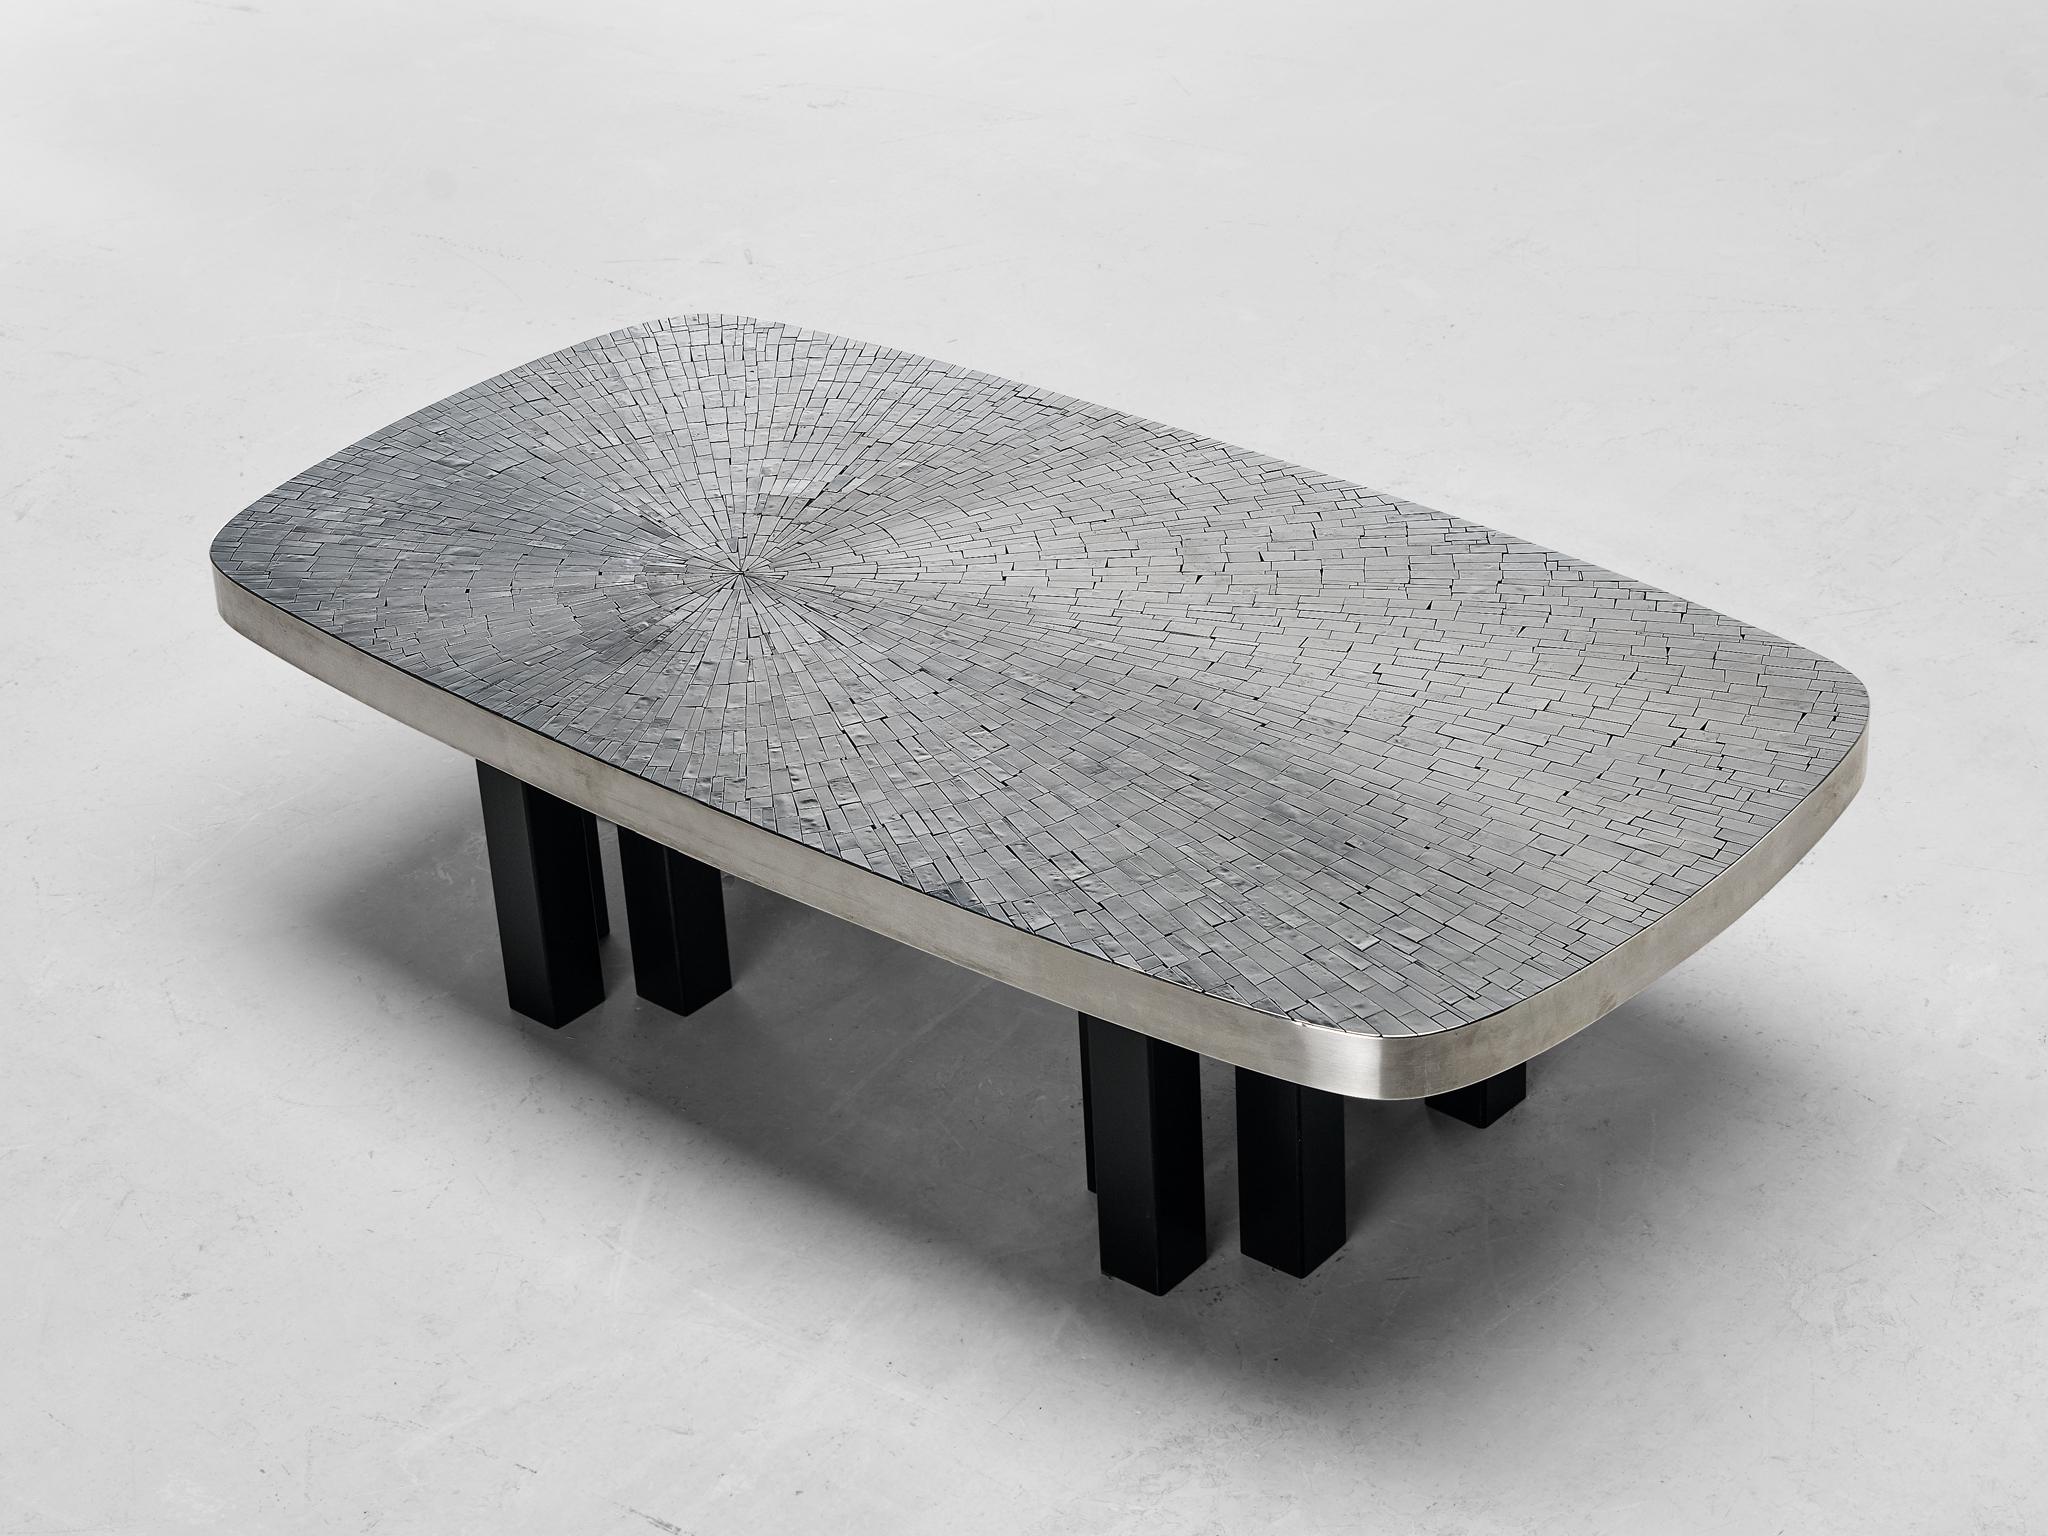 Jean Claude Dresse, Couchtisch, rostfreier Stahl, lackierter Stahl, Belgien, um 1975

Bezaubernder Couchtisch, entworfen von dem belgischen Künstler Jean Claude Dresse Mitte der 70er Jahre. Dieser rechteckige Tisch mit abgerundeten Konturen ist